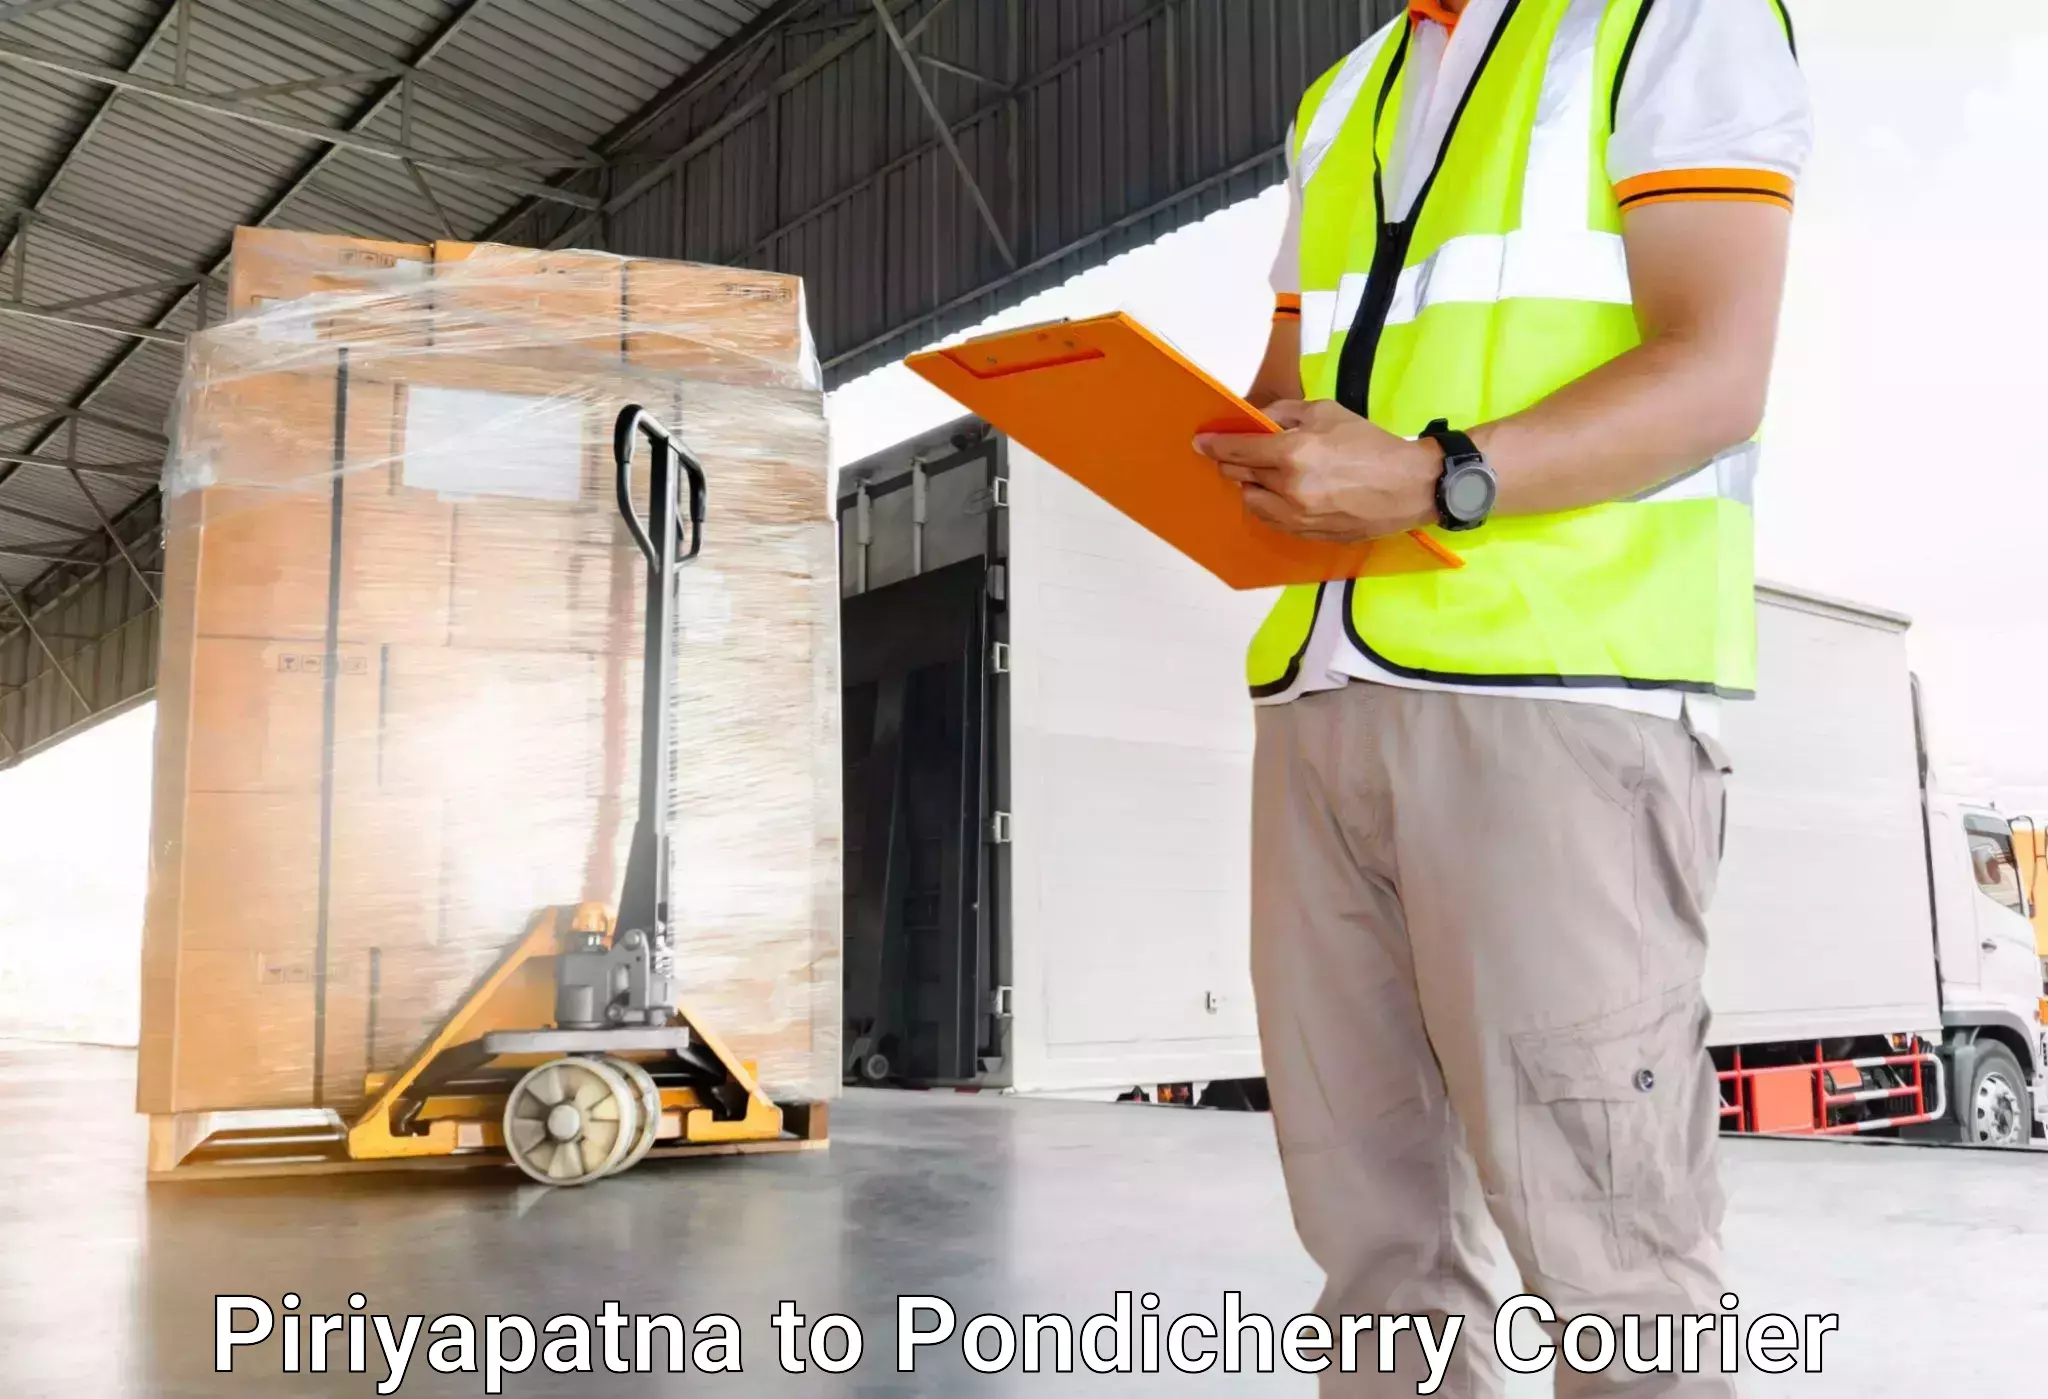 Luggage transport deals Piriyapatna to Pondicherry University